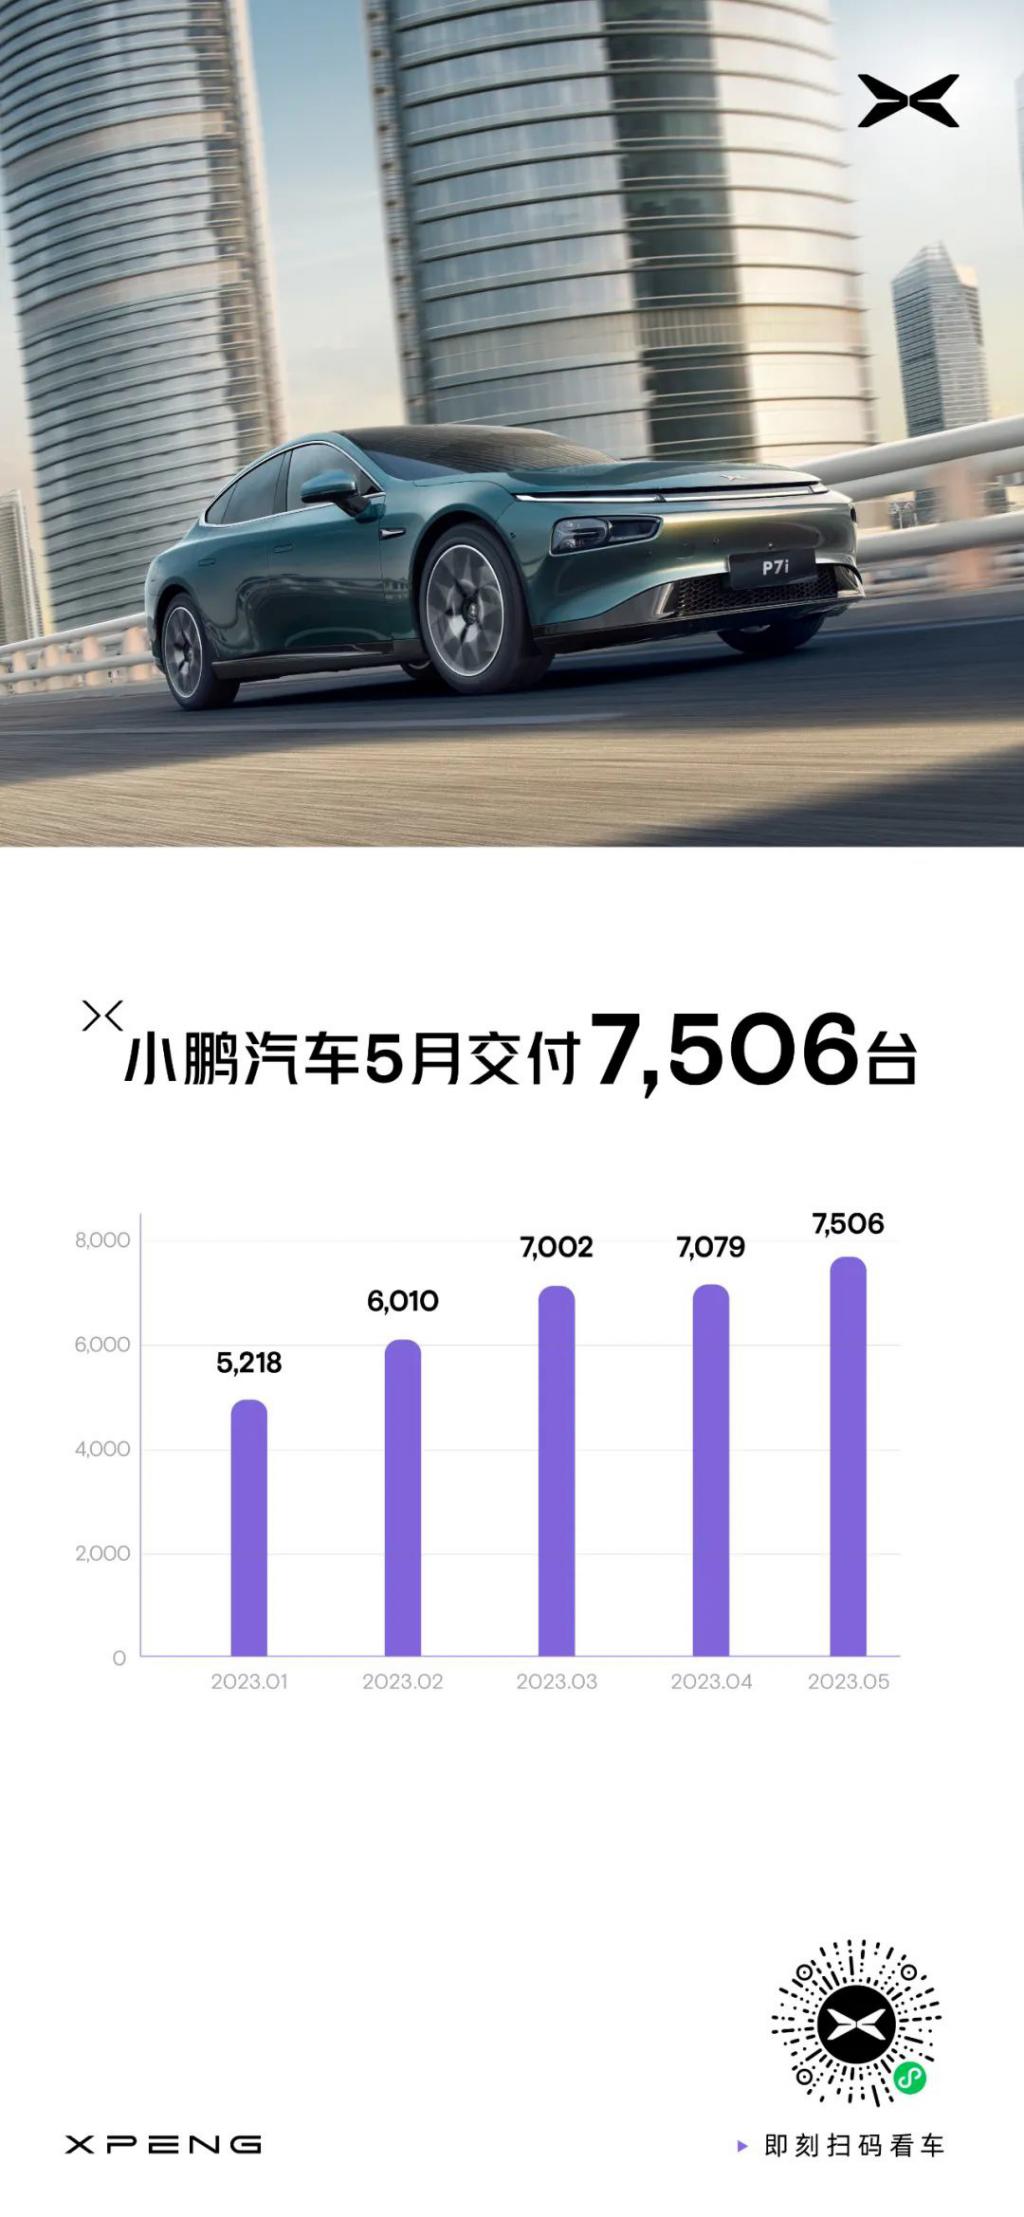 小鹏汽车 5 月交付 7506 辆新车，环比增长 6%